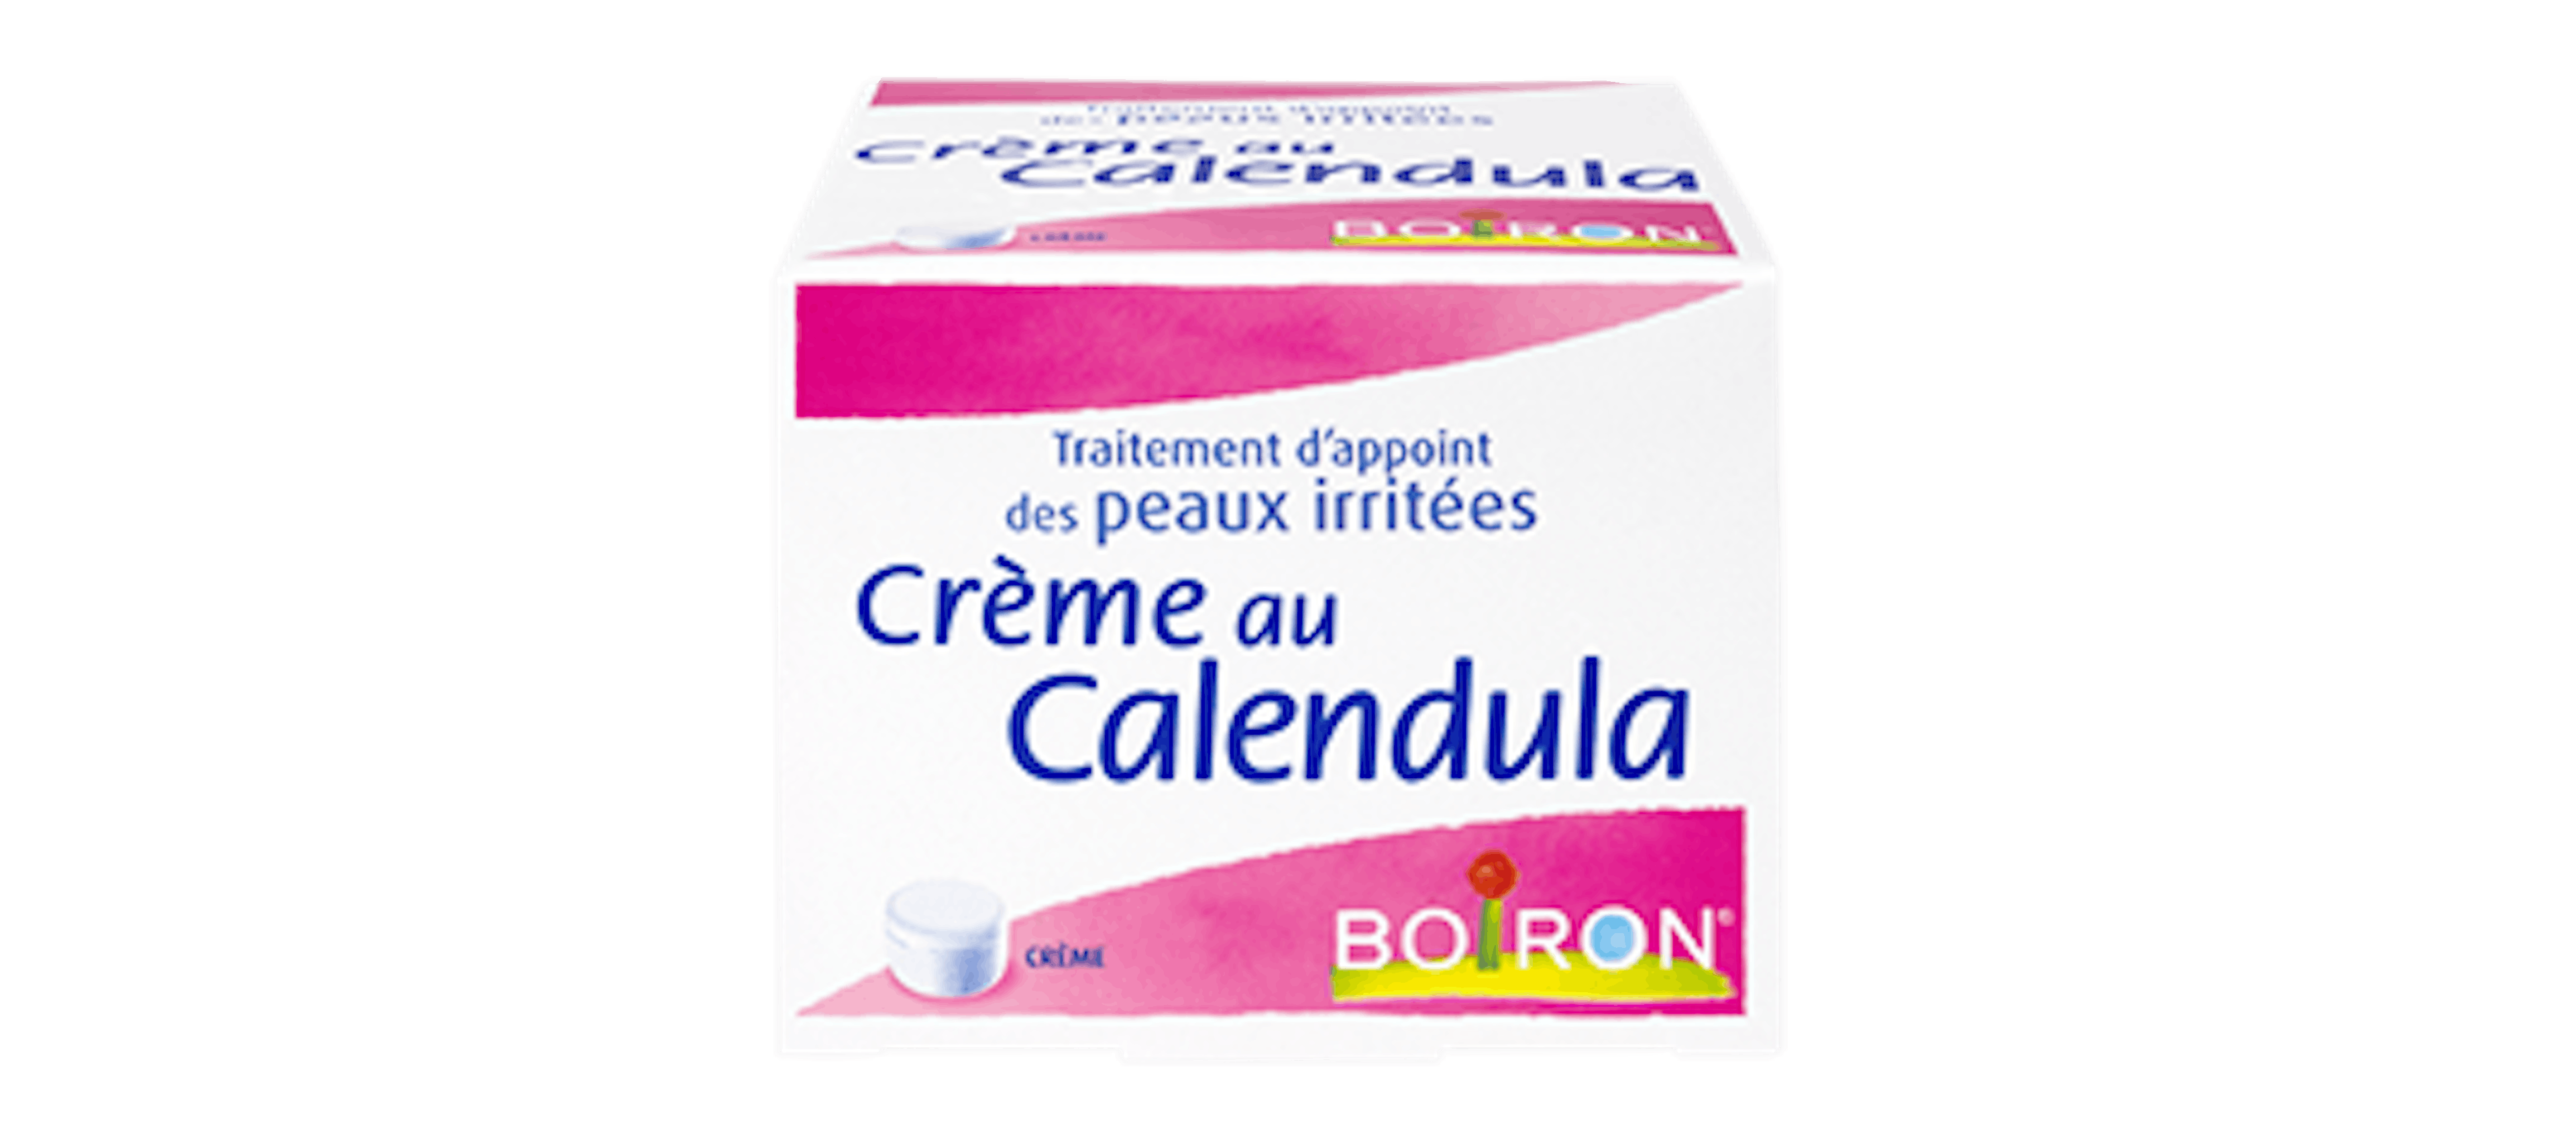 Homéopathie peaux irritées - Crème au Calendula Boiron